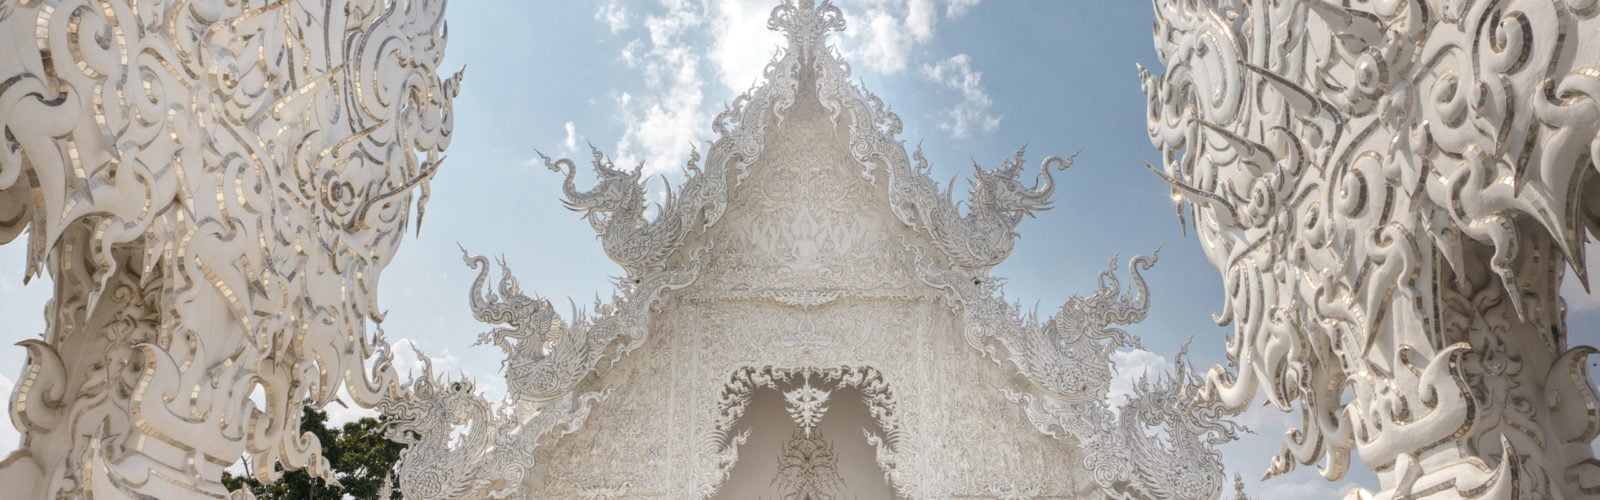 white-temple-chiang-rai-detail